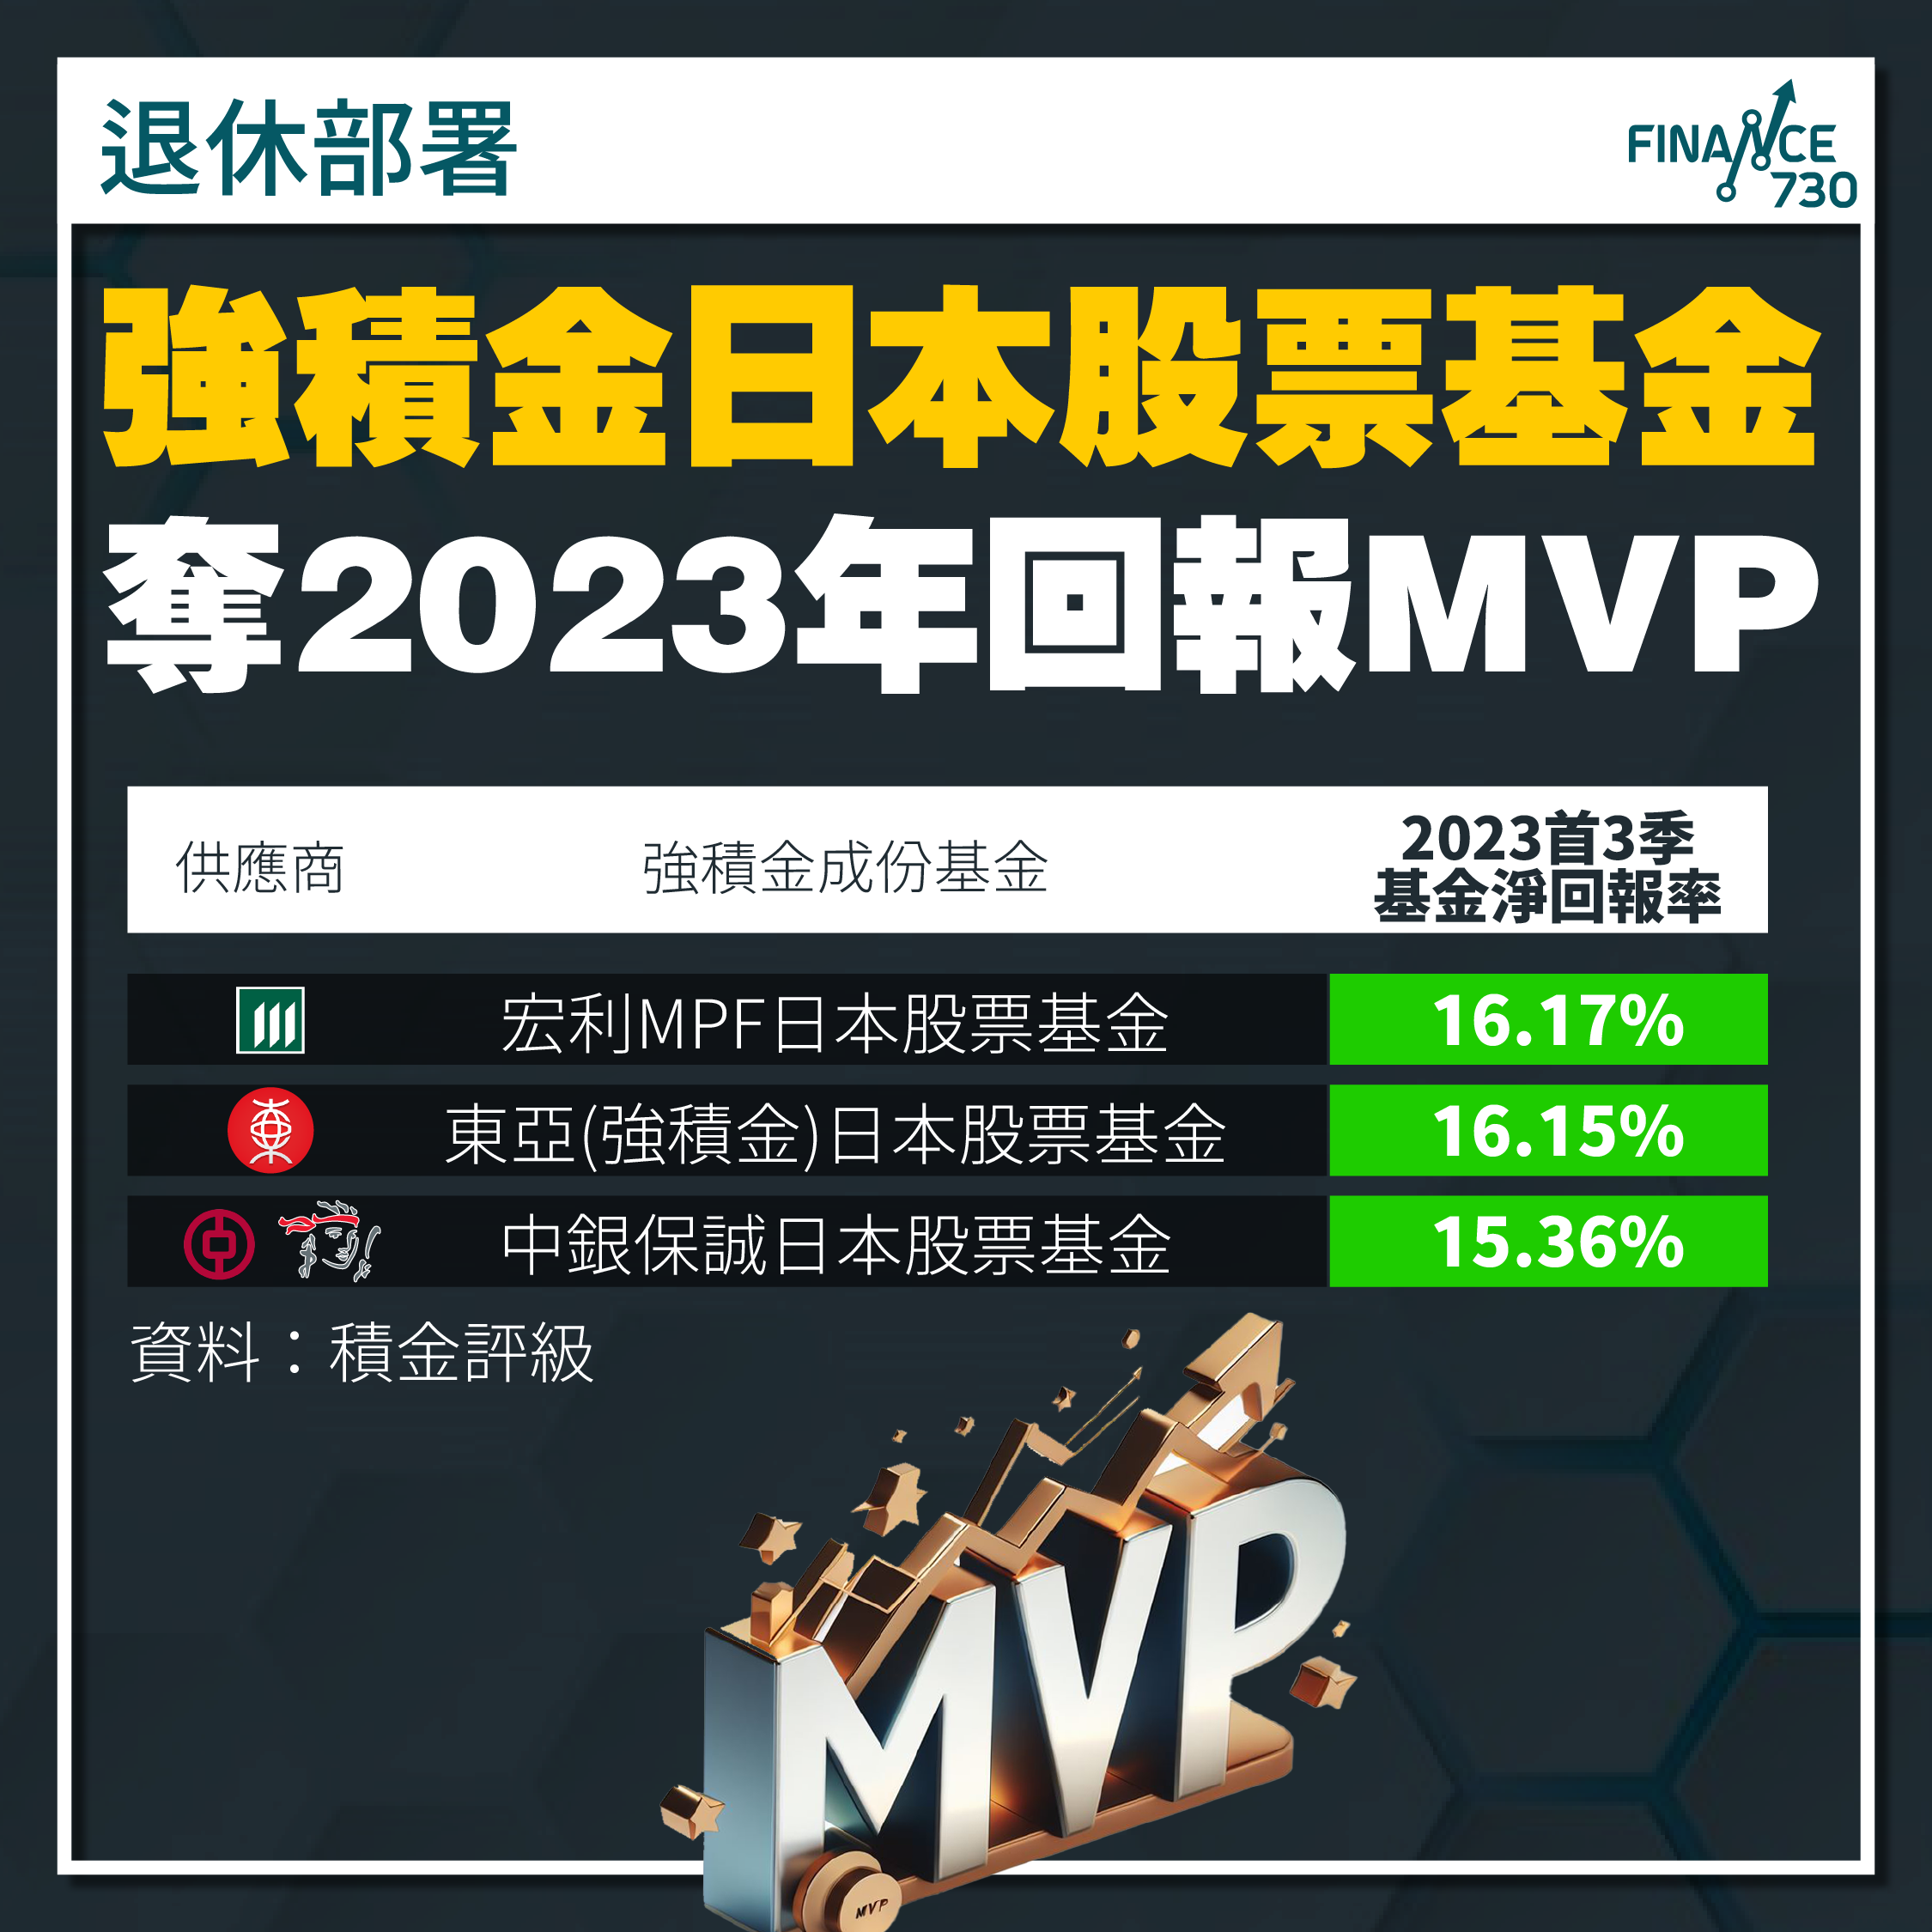 2023年強積金｜日股基金成首3季強積金表現Mvp - Finance730